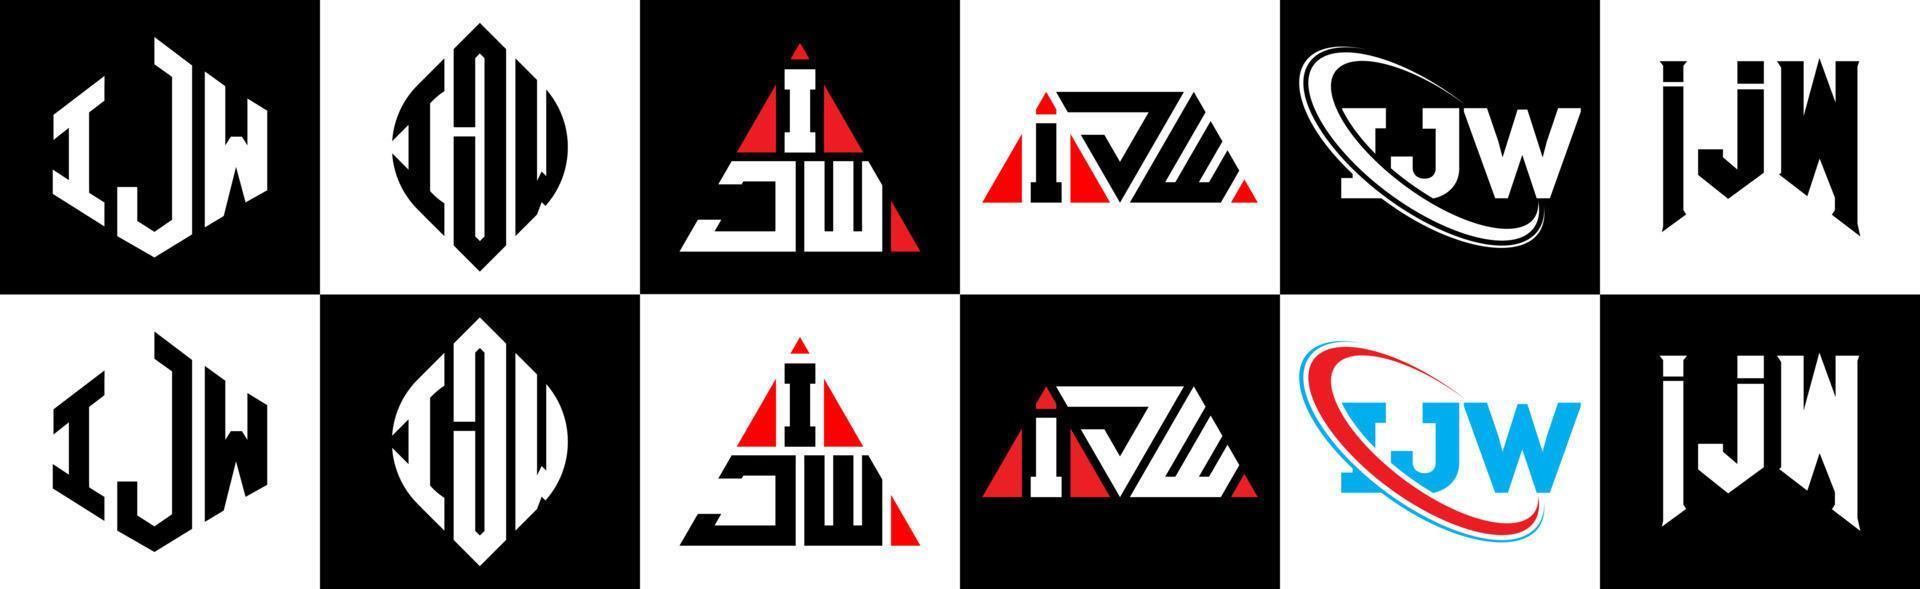 création de logo de lettre ijw en six styles. polygone ijw, cercle, triangle, hexagone, style plat et simple avec logo de lettre de variation de couleur noir et blanc dans un plan de travail. logo minimaliste et classique ijw vecteur